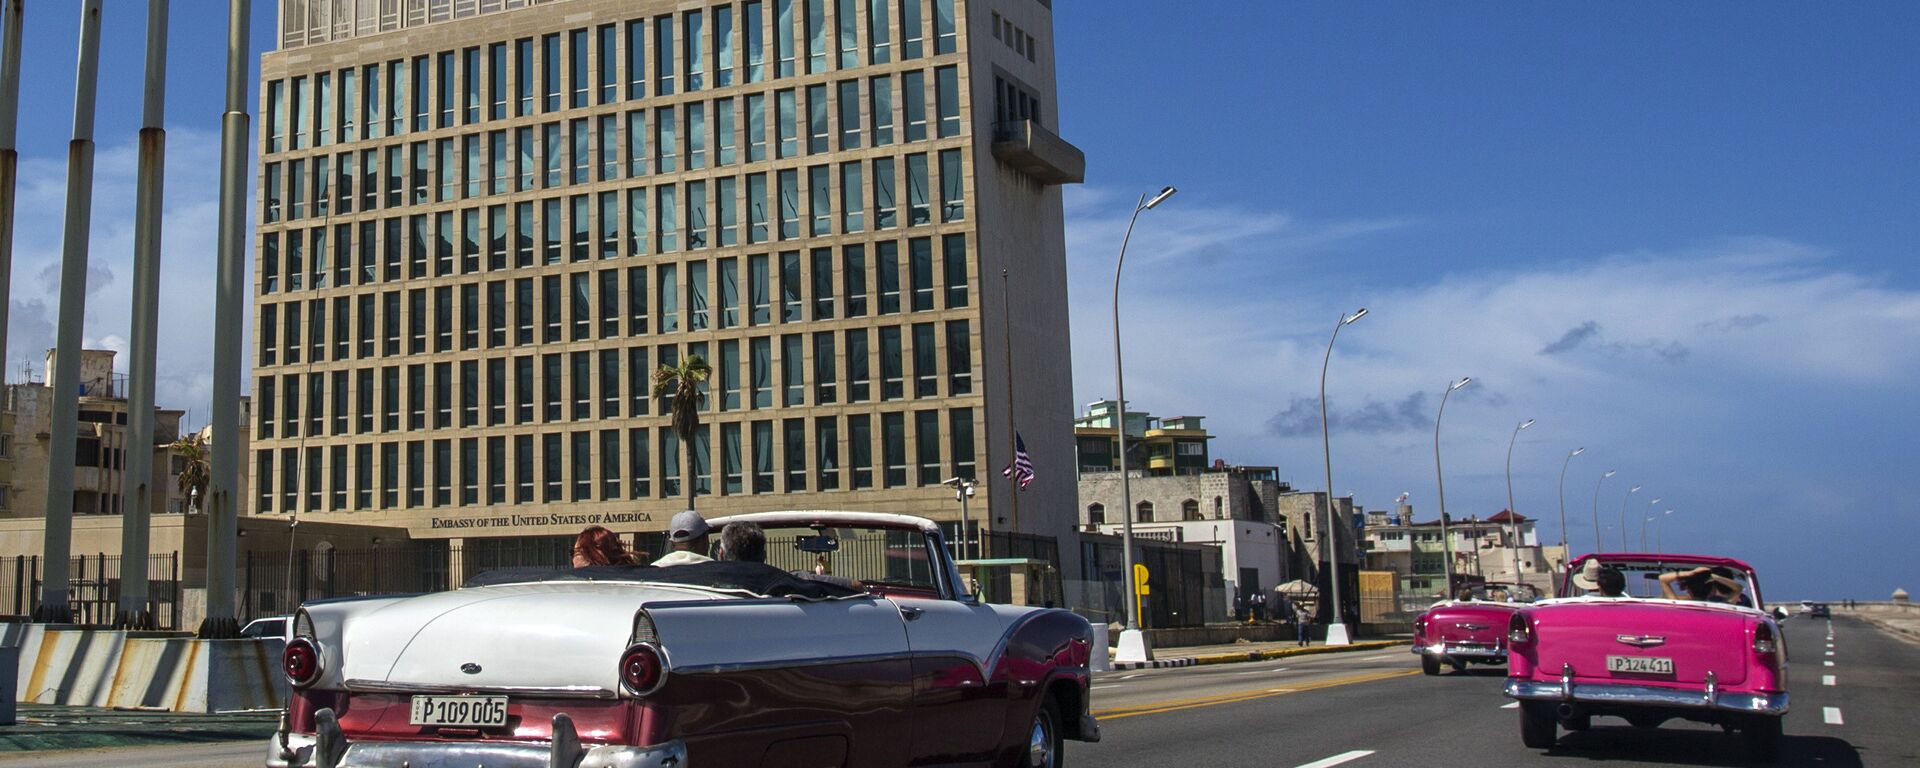 Embajada de Estados Unidos en La Habana - Sputnik Mundo, 1920, 12.03.2021